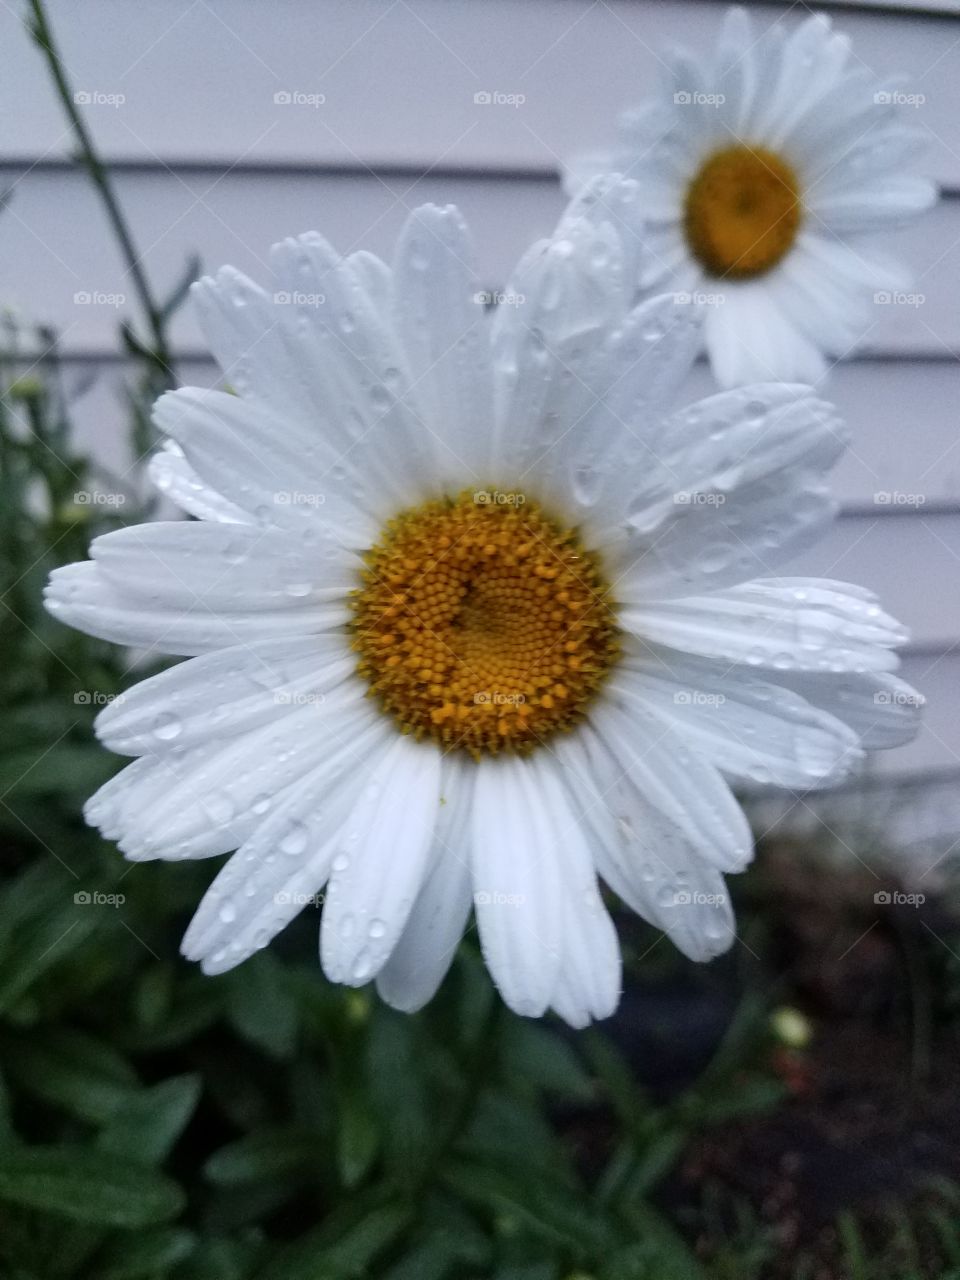 raindrops on a daisy